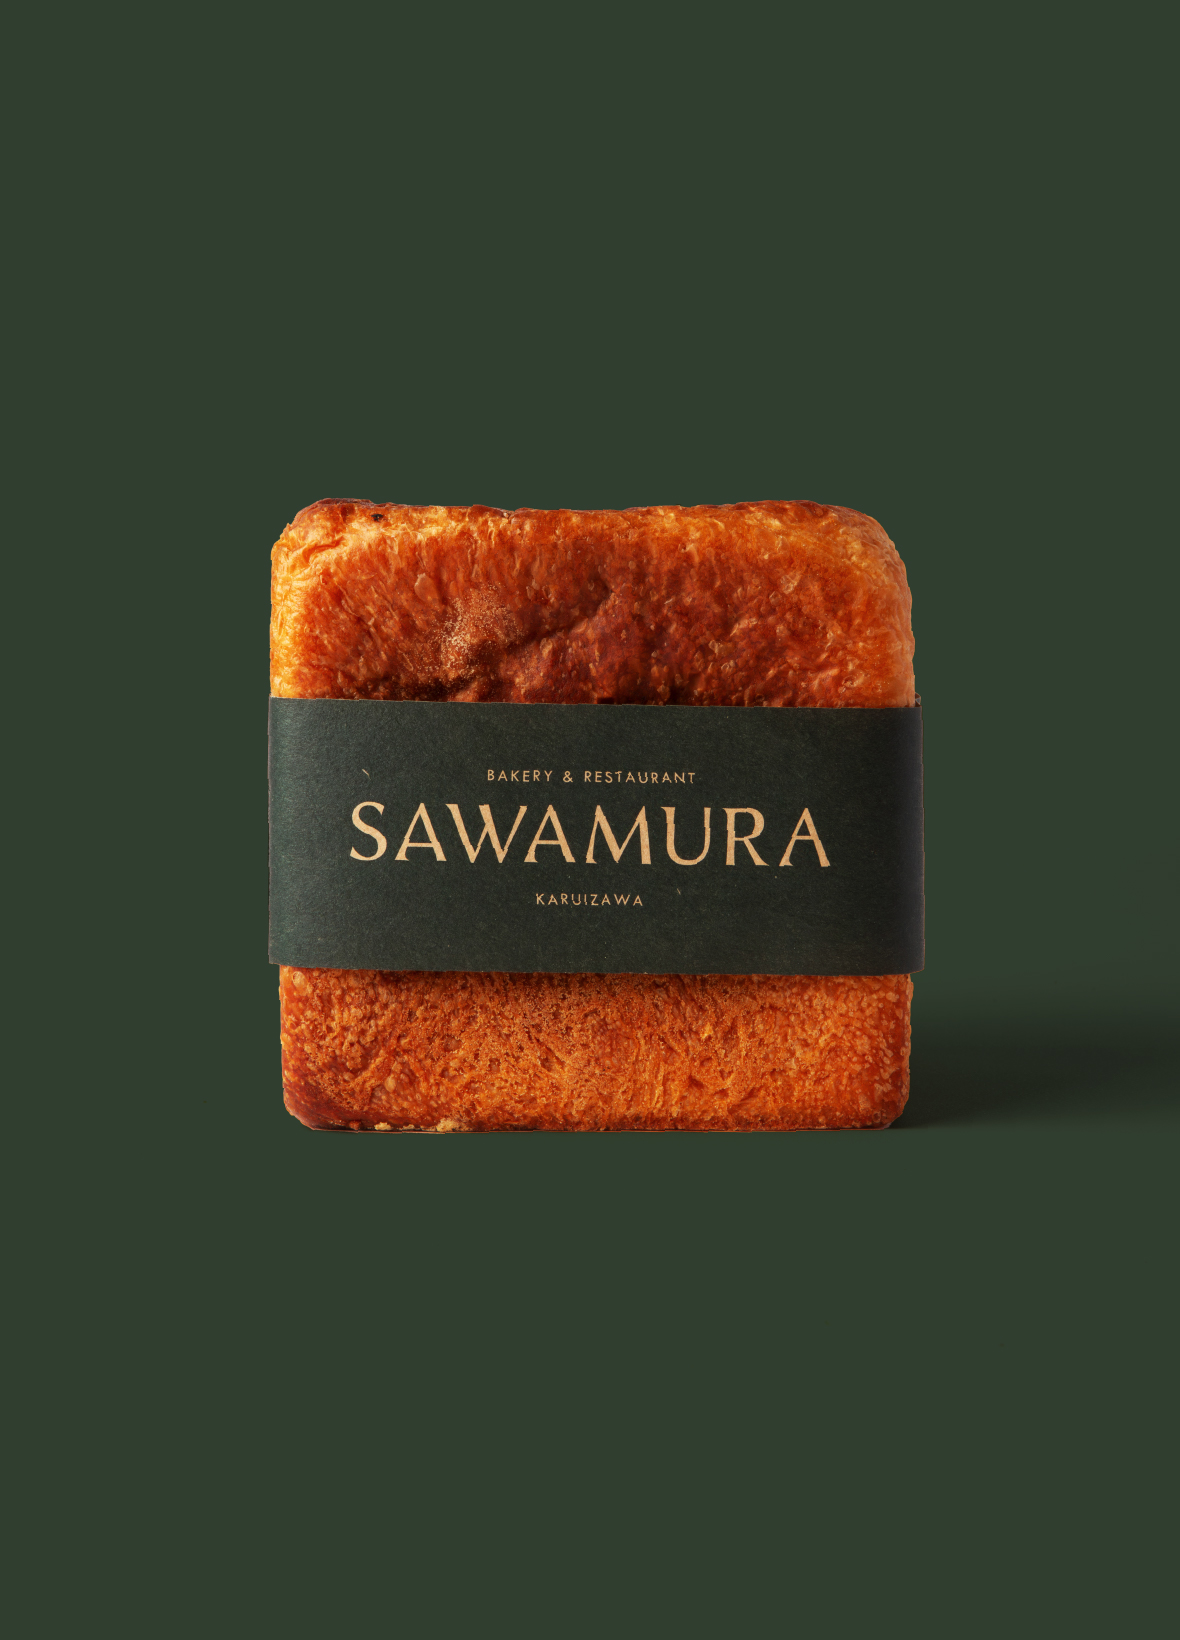 SAWAMURA RICH BREAD